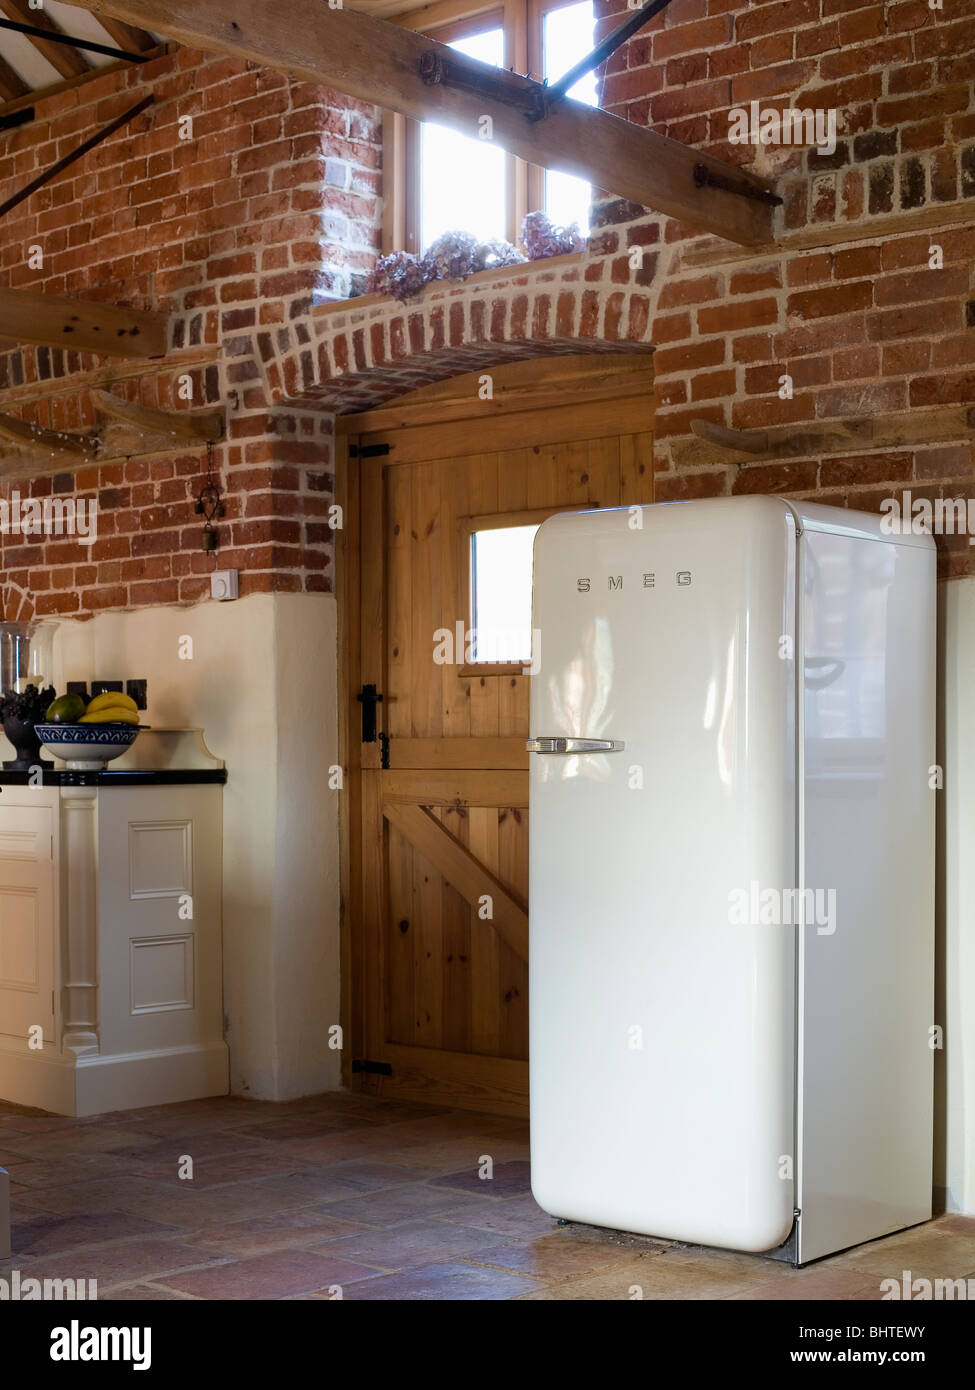 Grand réfrigérateur Smeg blanc grange convertie en cuisine avec murs en  brique Photo Stock - Alamy